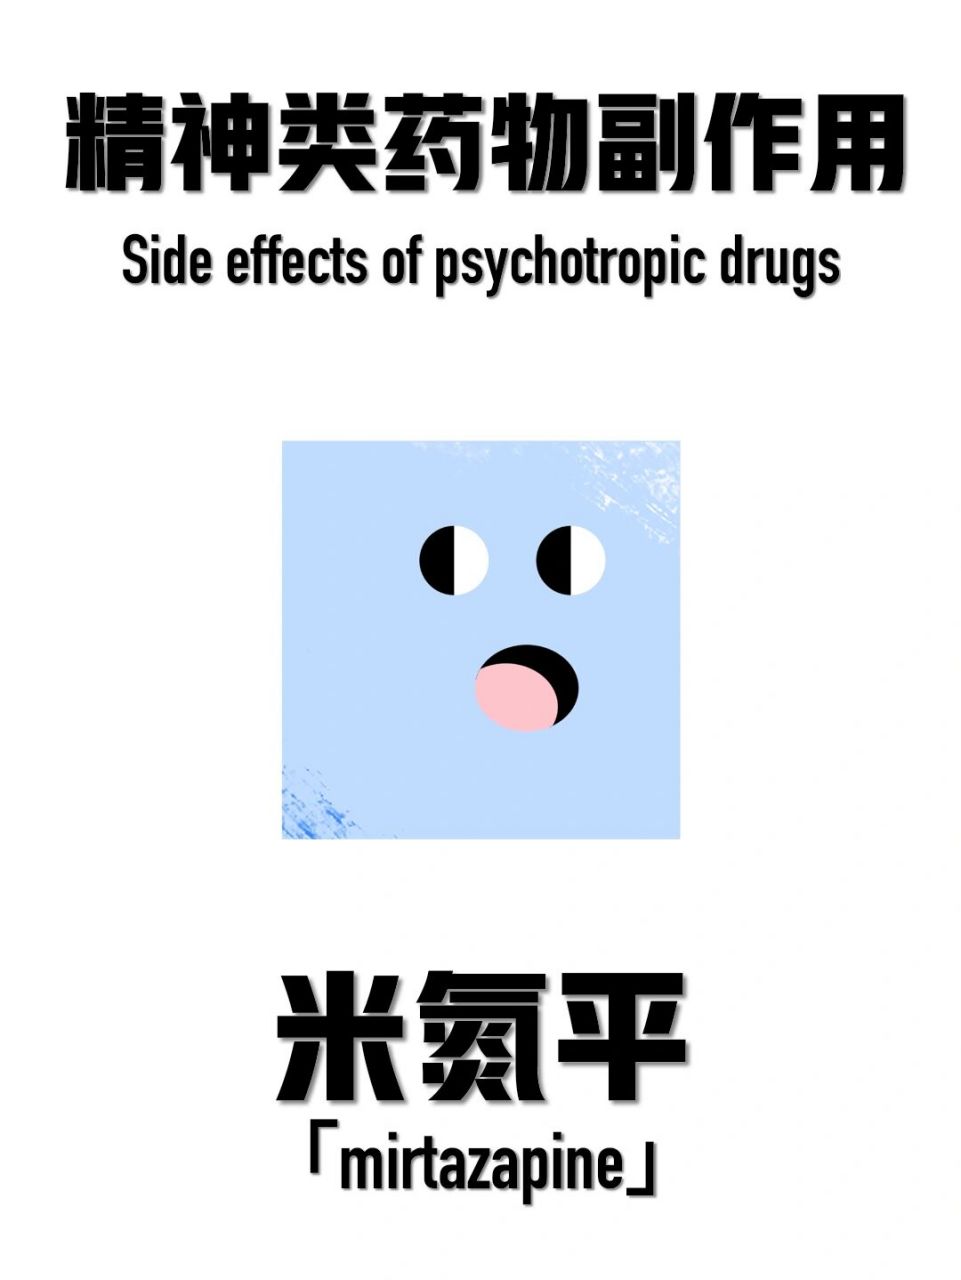 精神类药物副作用「米氮平」 不良反应详见图